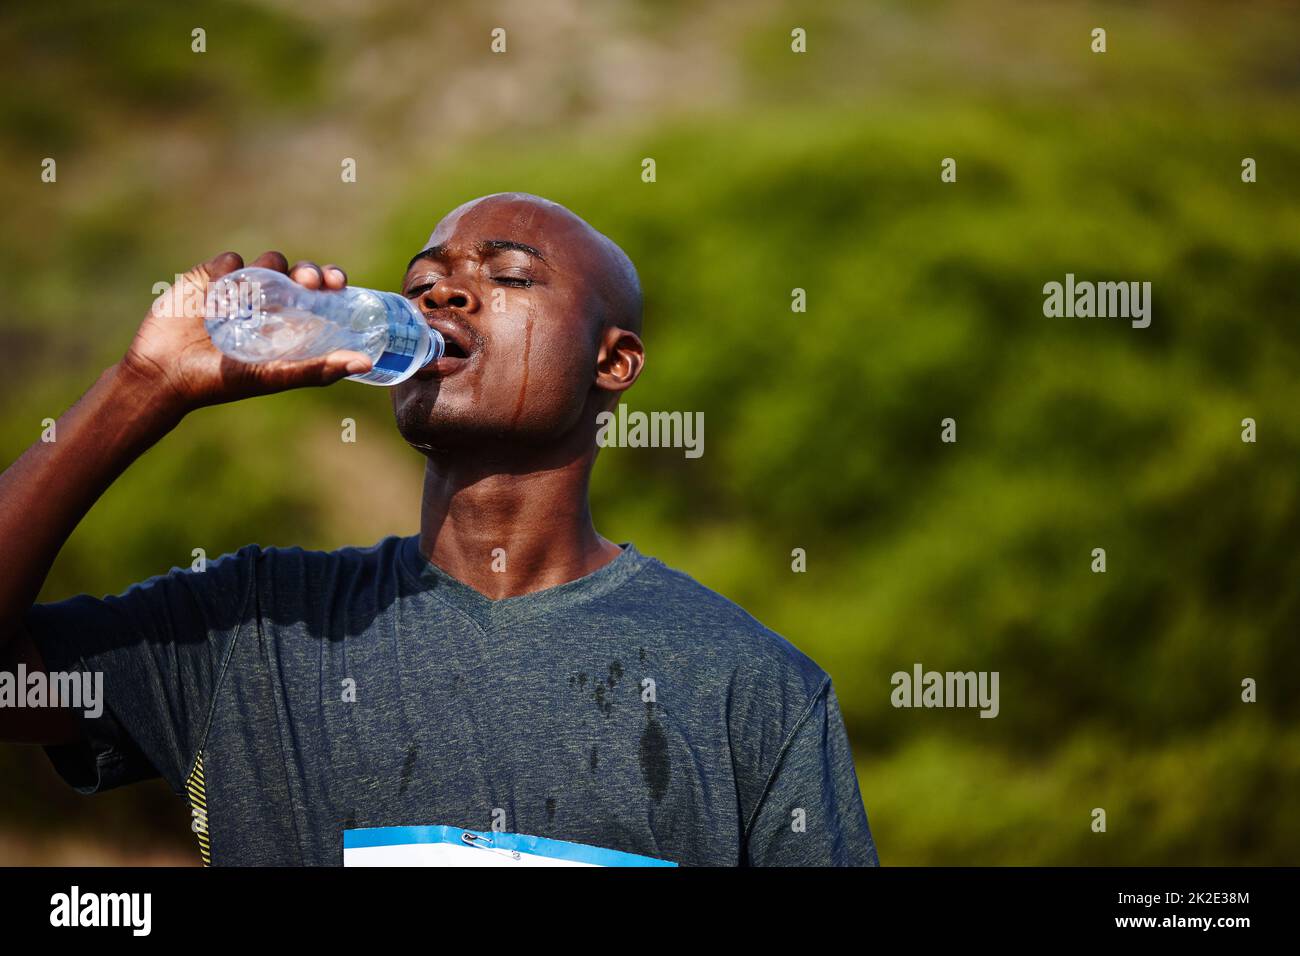 H2O - Un meilleur ami des coureurs. Photo d'un jeune homme qui boit de sa bouteille d'eau pendant une course. Banque D'Images